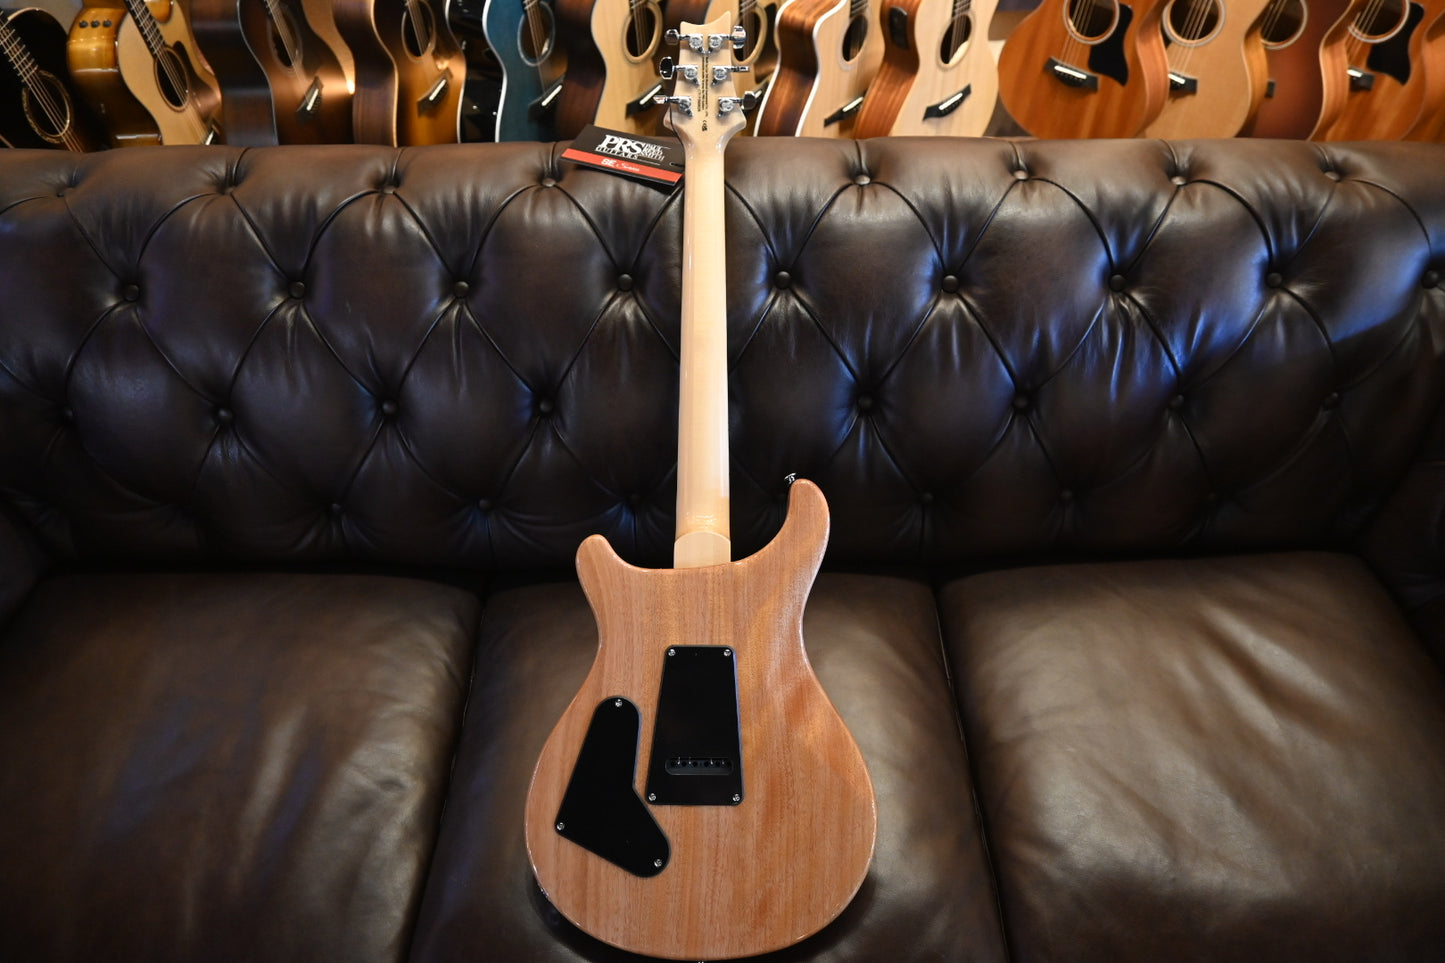 PRS SE Custom 24 Quilt - Turquoise Guitar #6628 - Danville Music